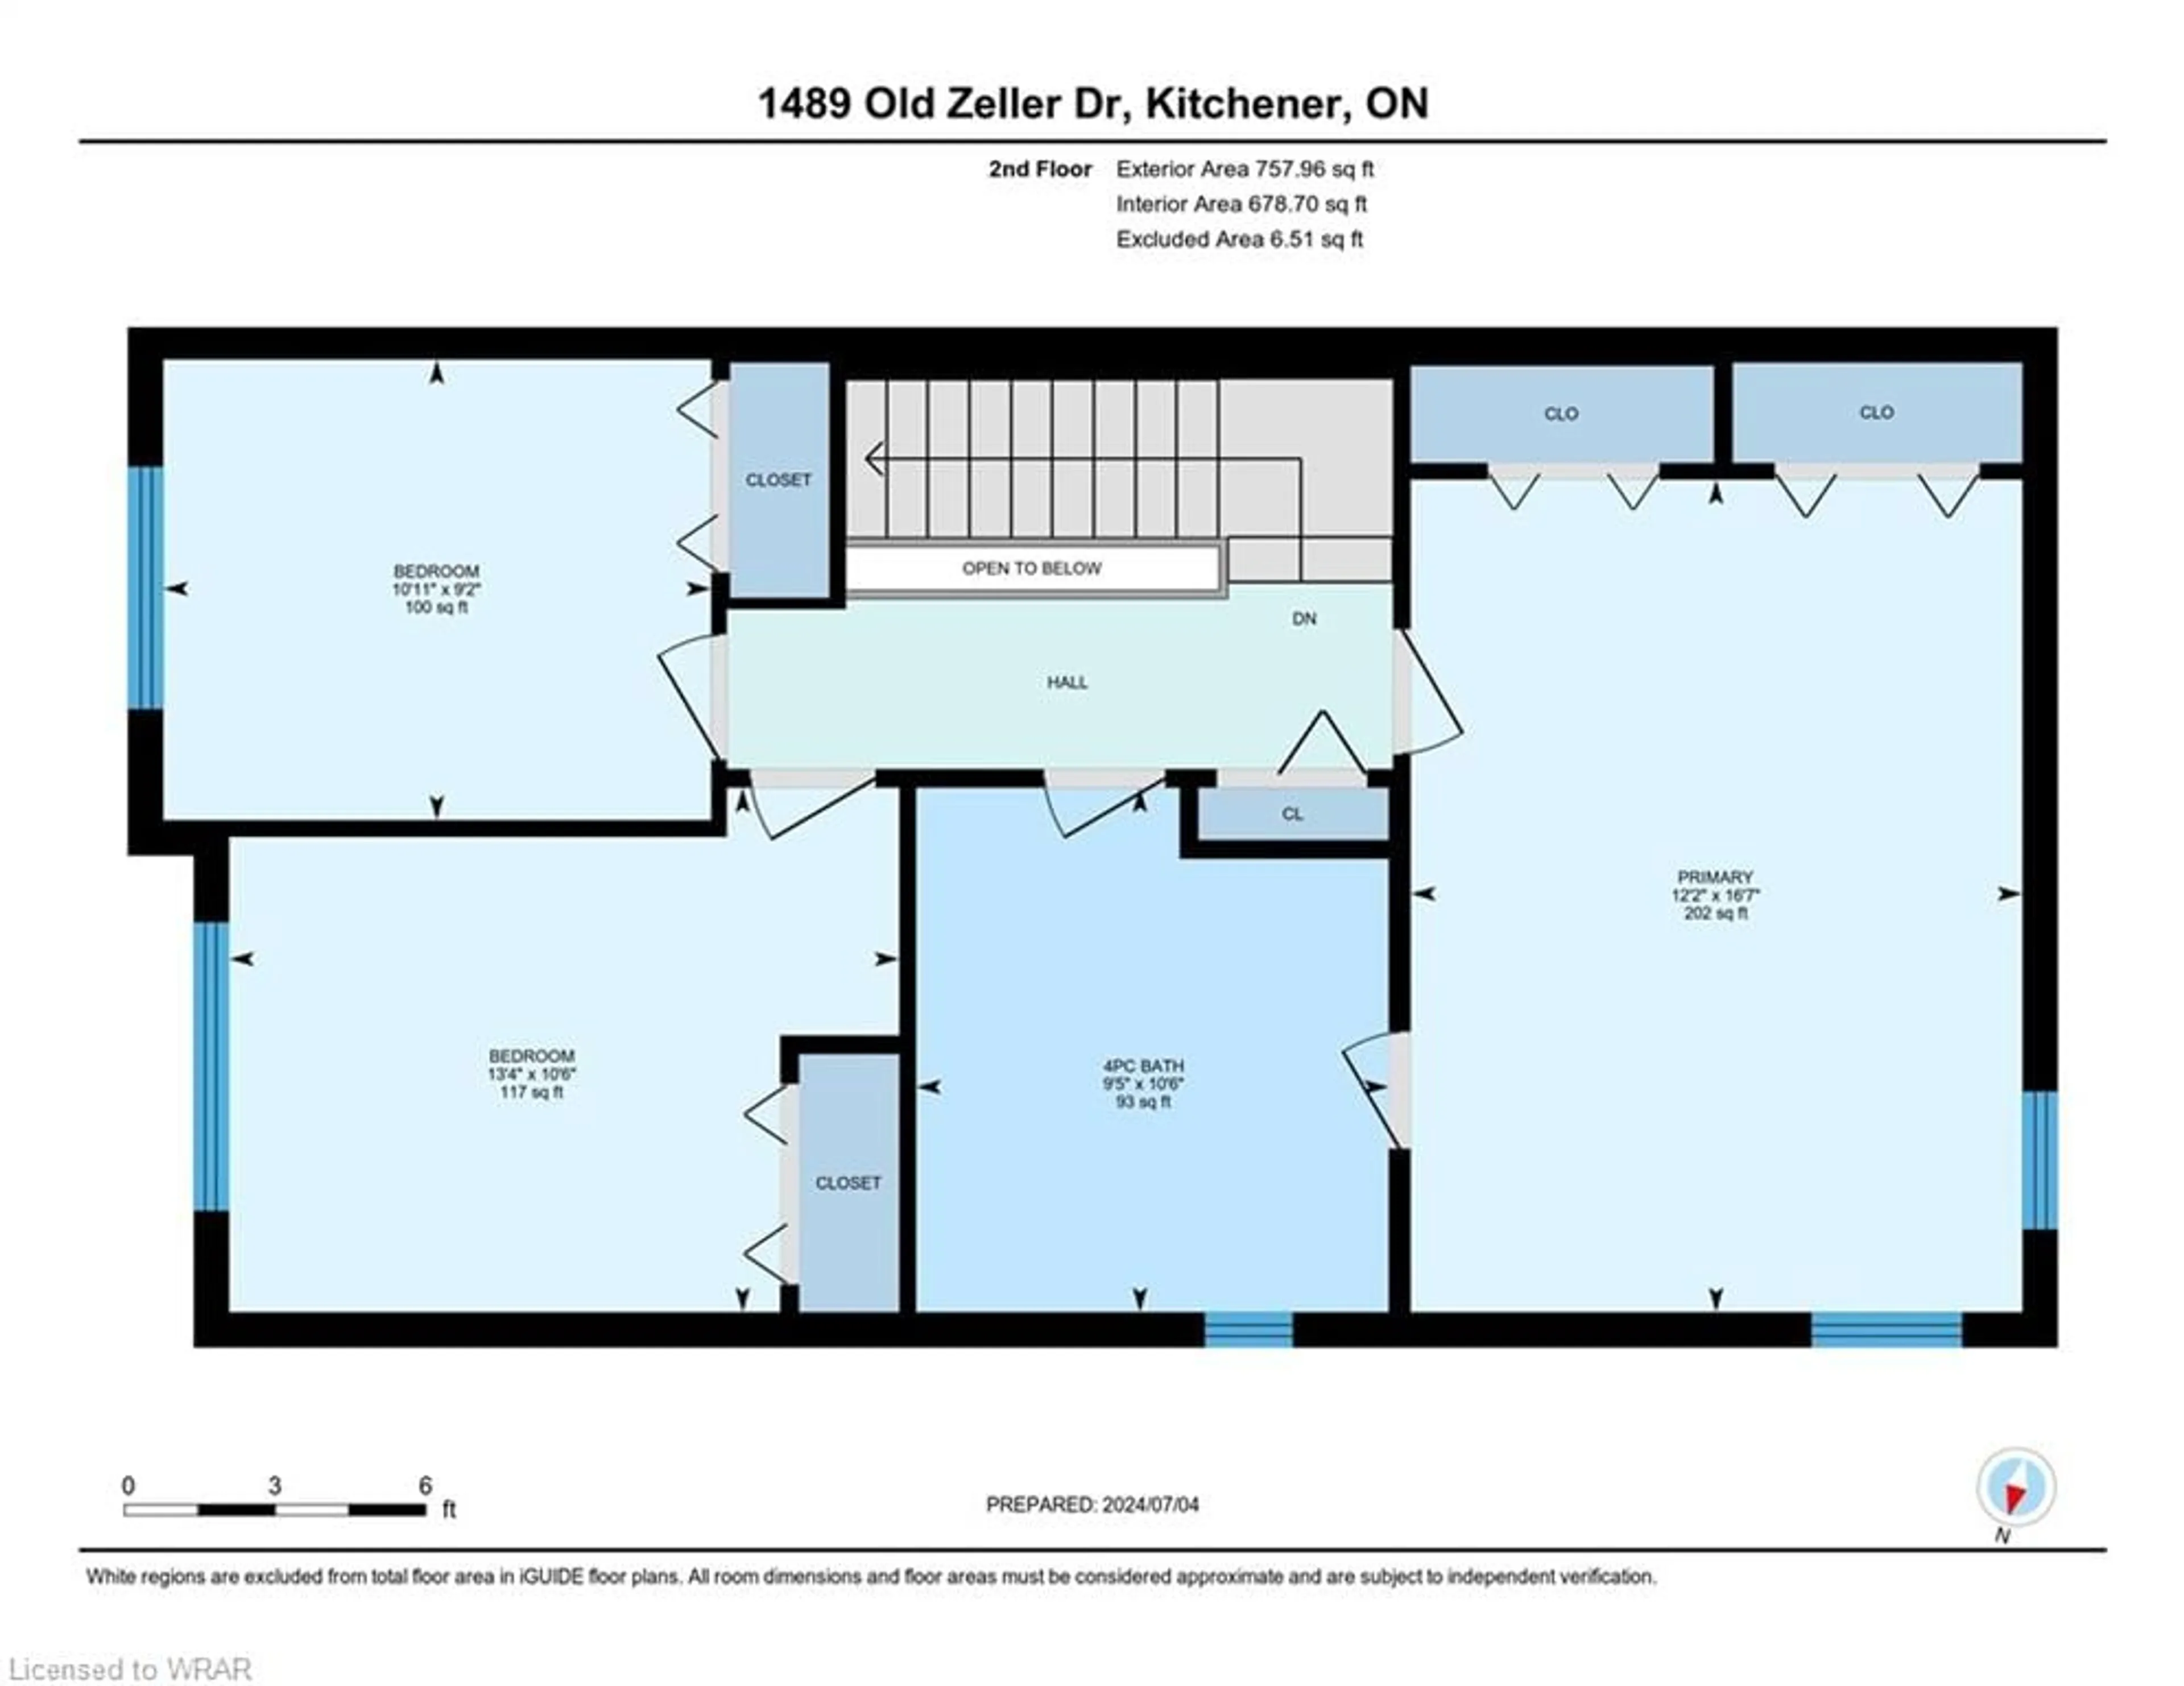 Floor plan for 1489 Old Zeller Dr, Kitchener Ontario N2A 4M8